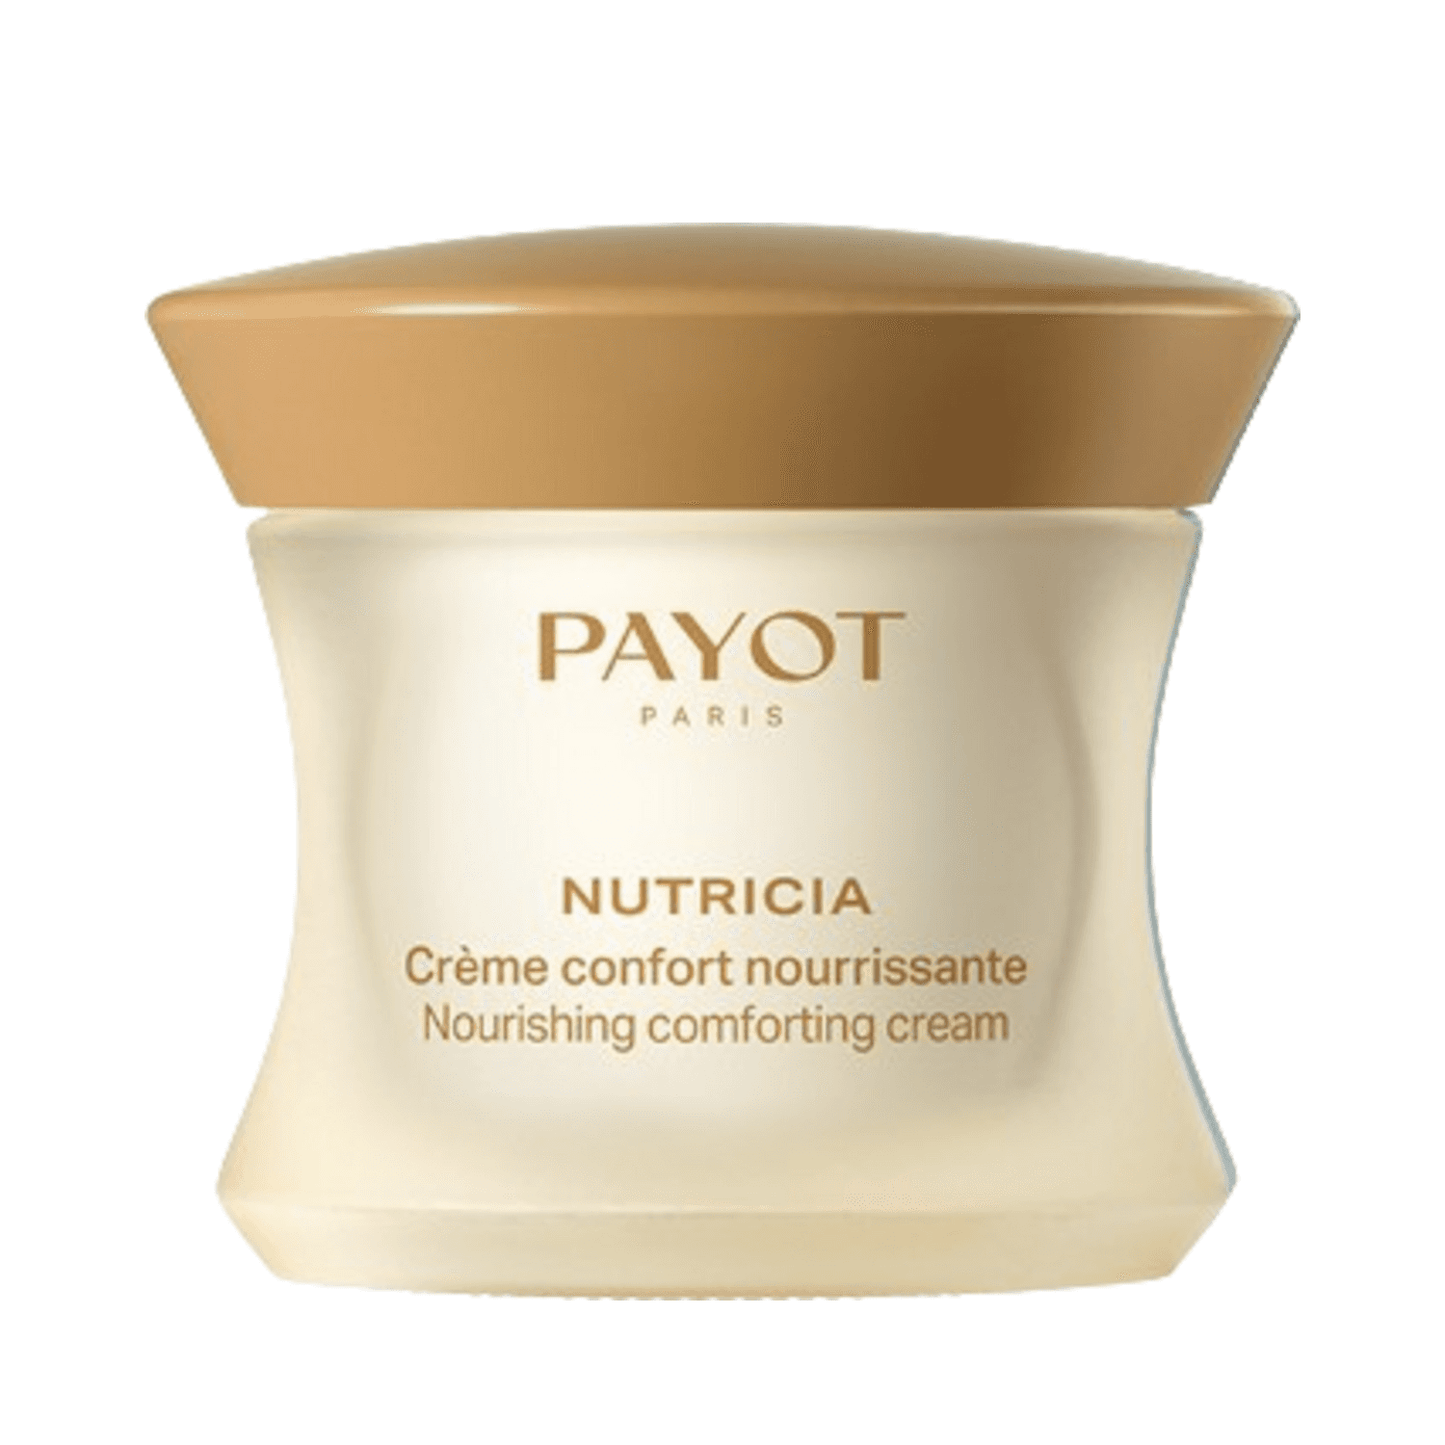 Payot Nourishing Conforting Cream